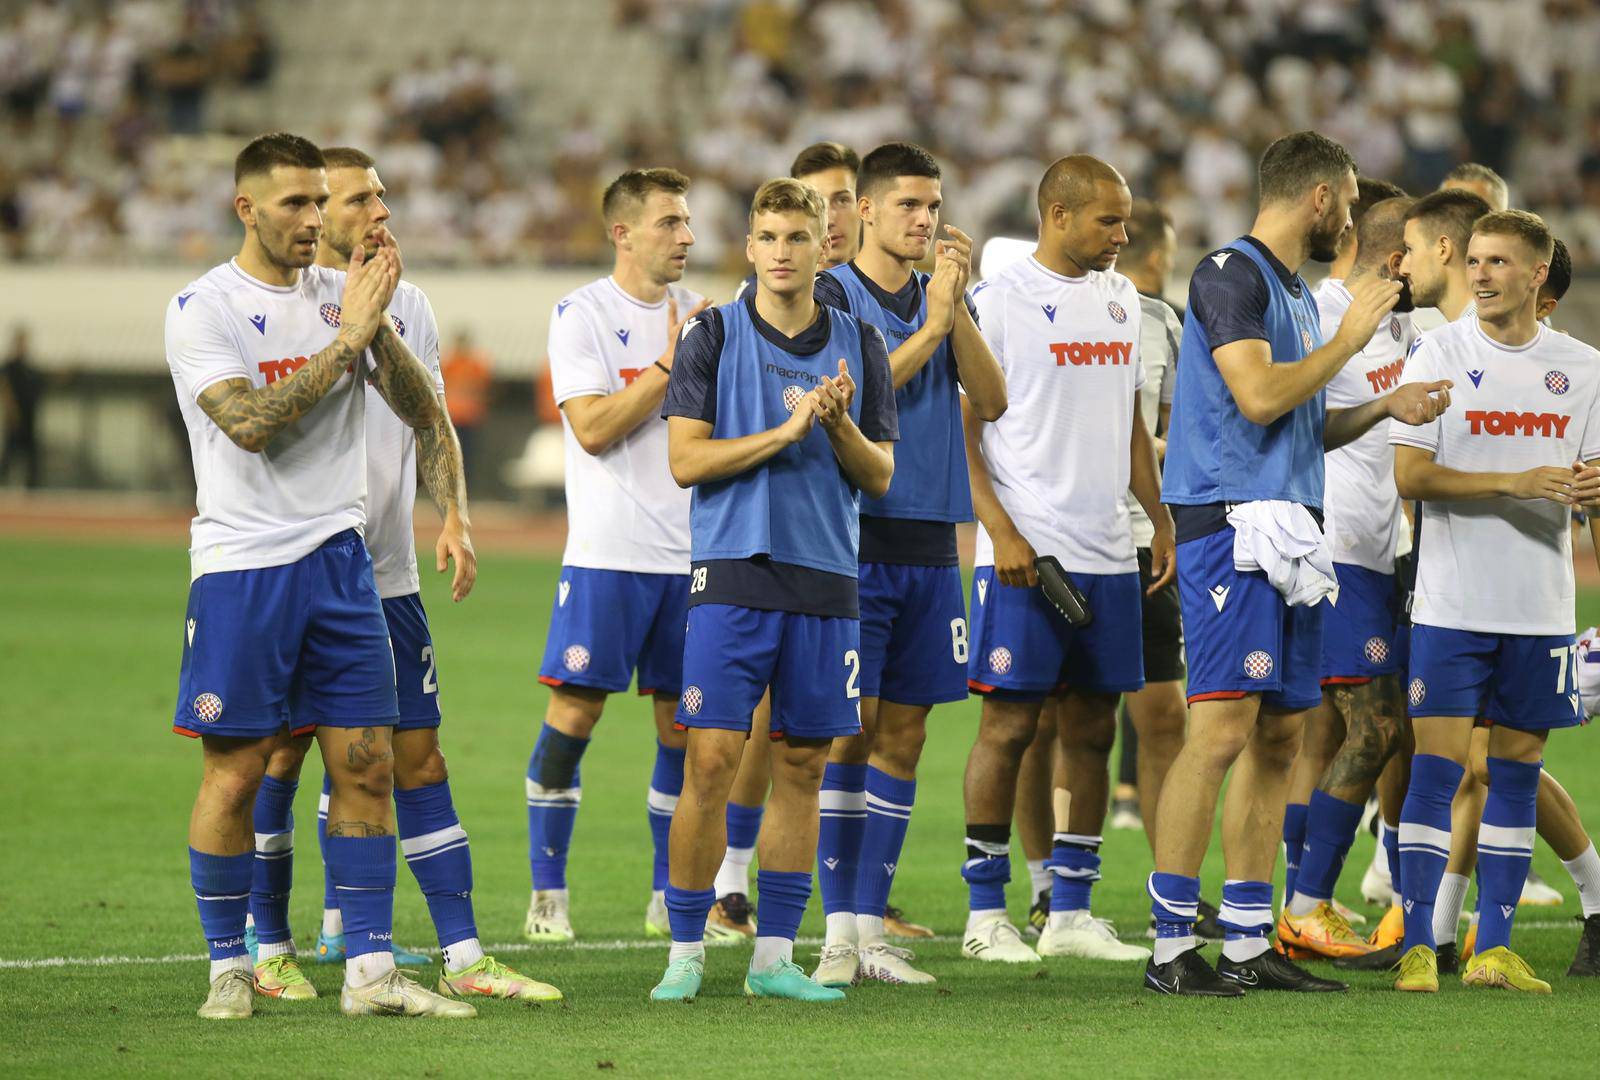 Susret Hajduka i PAOK-a u 3. pretkolu Konferencijske lige